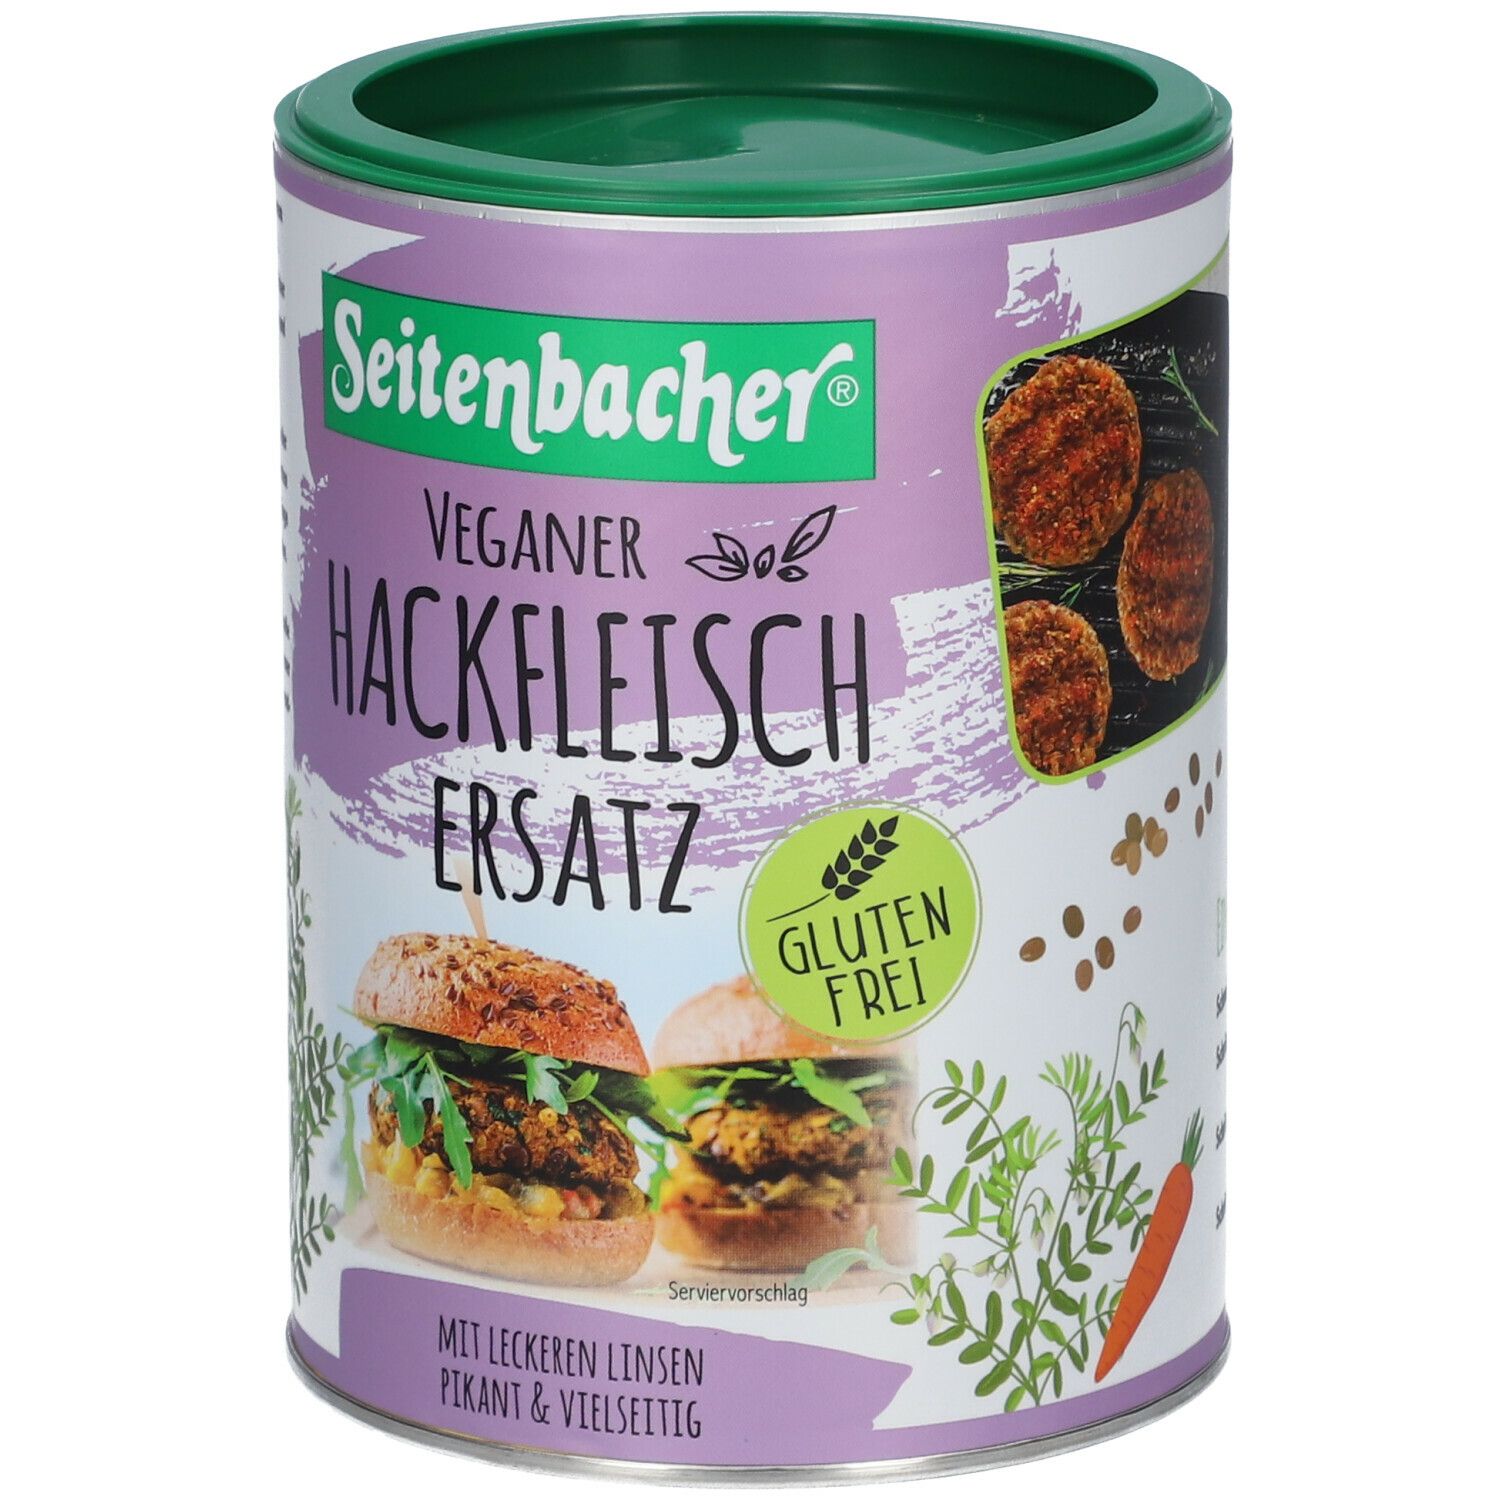 Seitenbacher® Veganer Hackfleischersatz